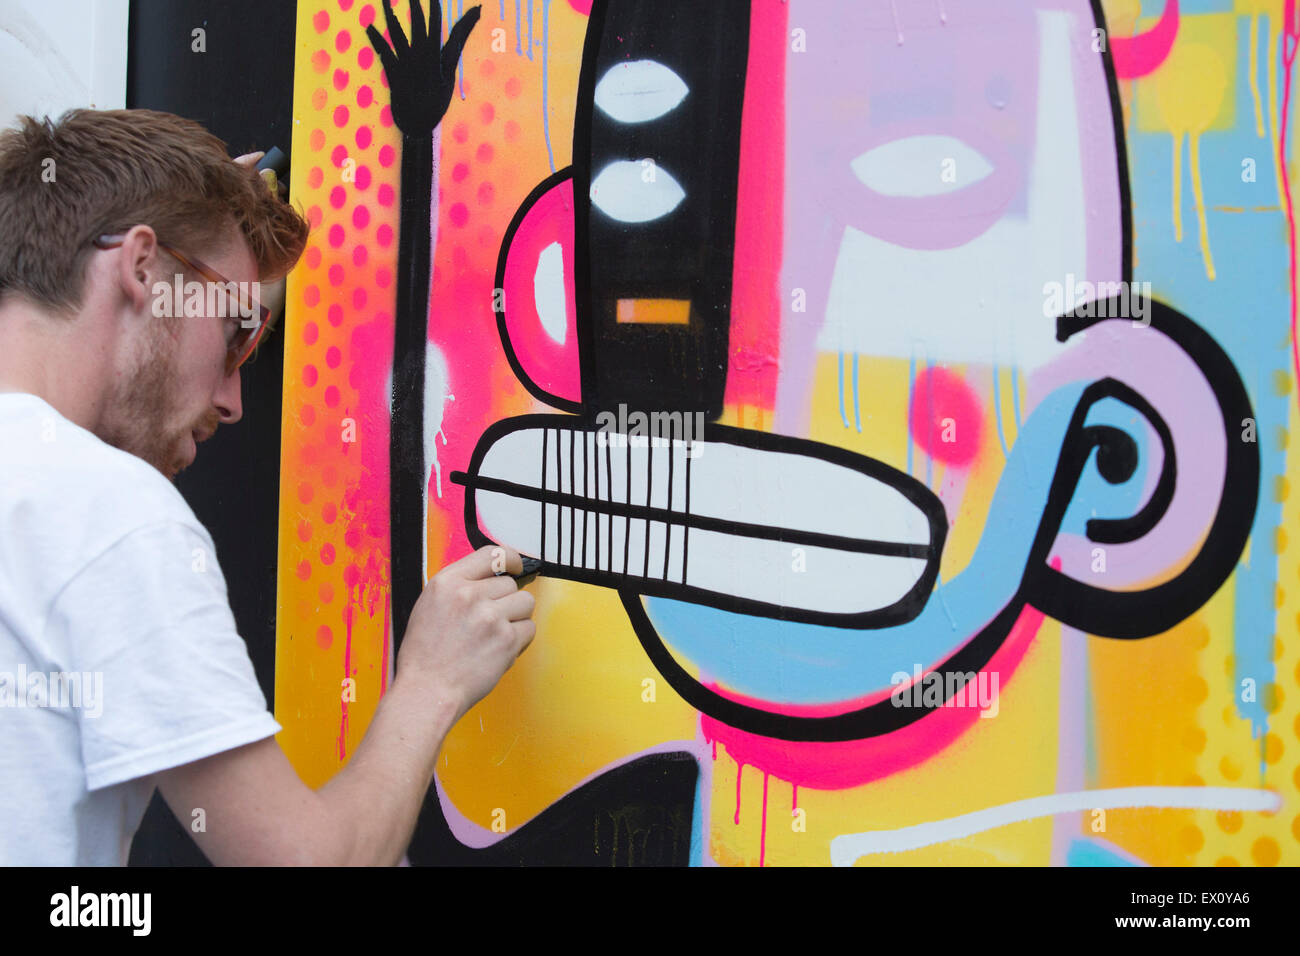 London, UK. 2. Juli 2015. Belgischer Künstler Joachim ein Kunstwerk zu schaffen. GraffitiStreet.com, der Online-street-Art-Galerie sind wieder für ein weiteres Jahr präsentieren ihre neuesten Gruppe zeigen mit dem Titel "Underground" 2. Juli 2015 in Shoreditch. Mit teilnehmenden Straße und Graffiti-Künstler Pichi & Avo (Spanien), L7m (Brasilien), Bordalo II (Portugal), Hunto (Italien), Pahnl (UK), Bisser (Belgien), mein Hund seufzt (UK), JPS (UK), Kunst ist Tra$ h (Spanien), Nils Westergard (US), Joachim (Belgien) und 3F (UK). Stockfoto